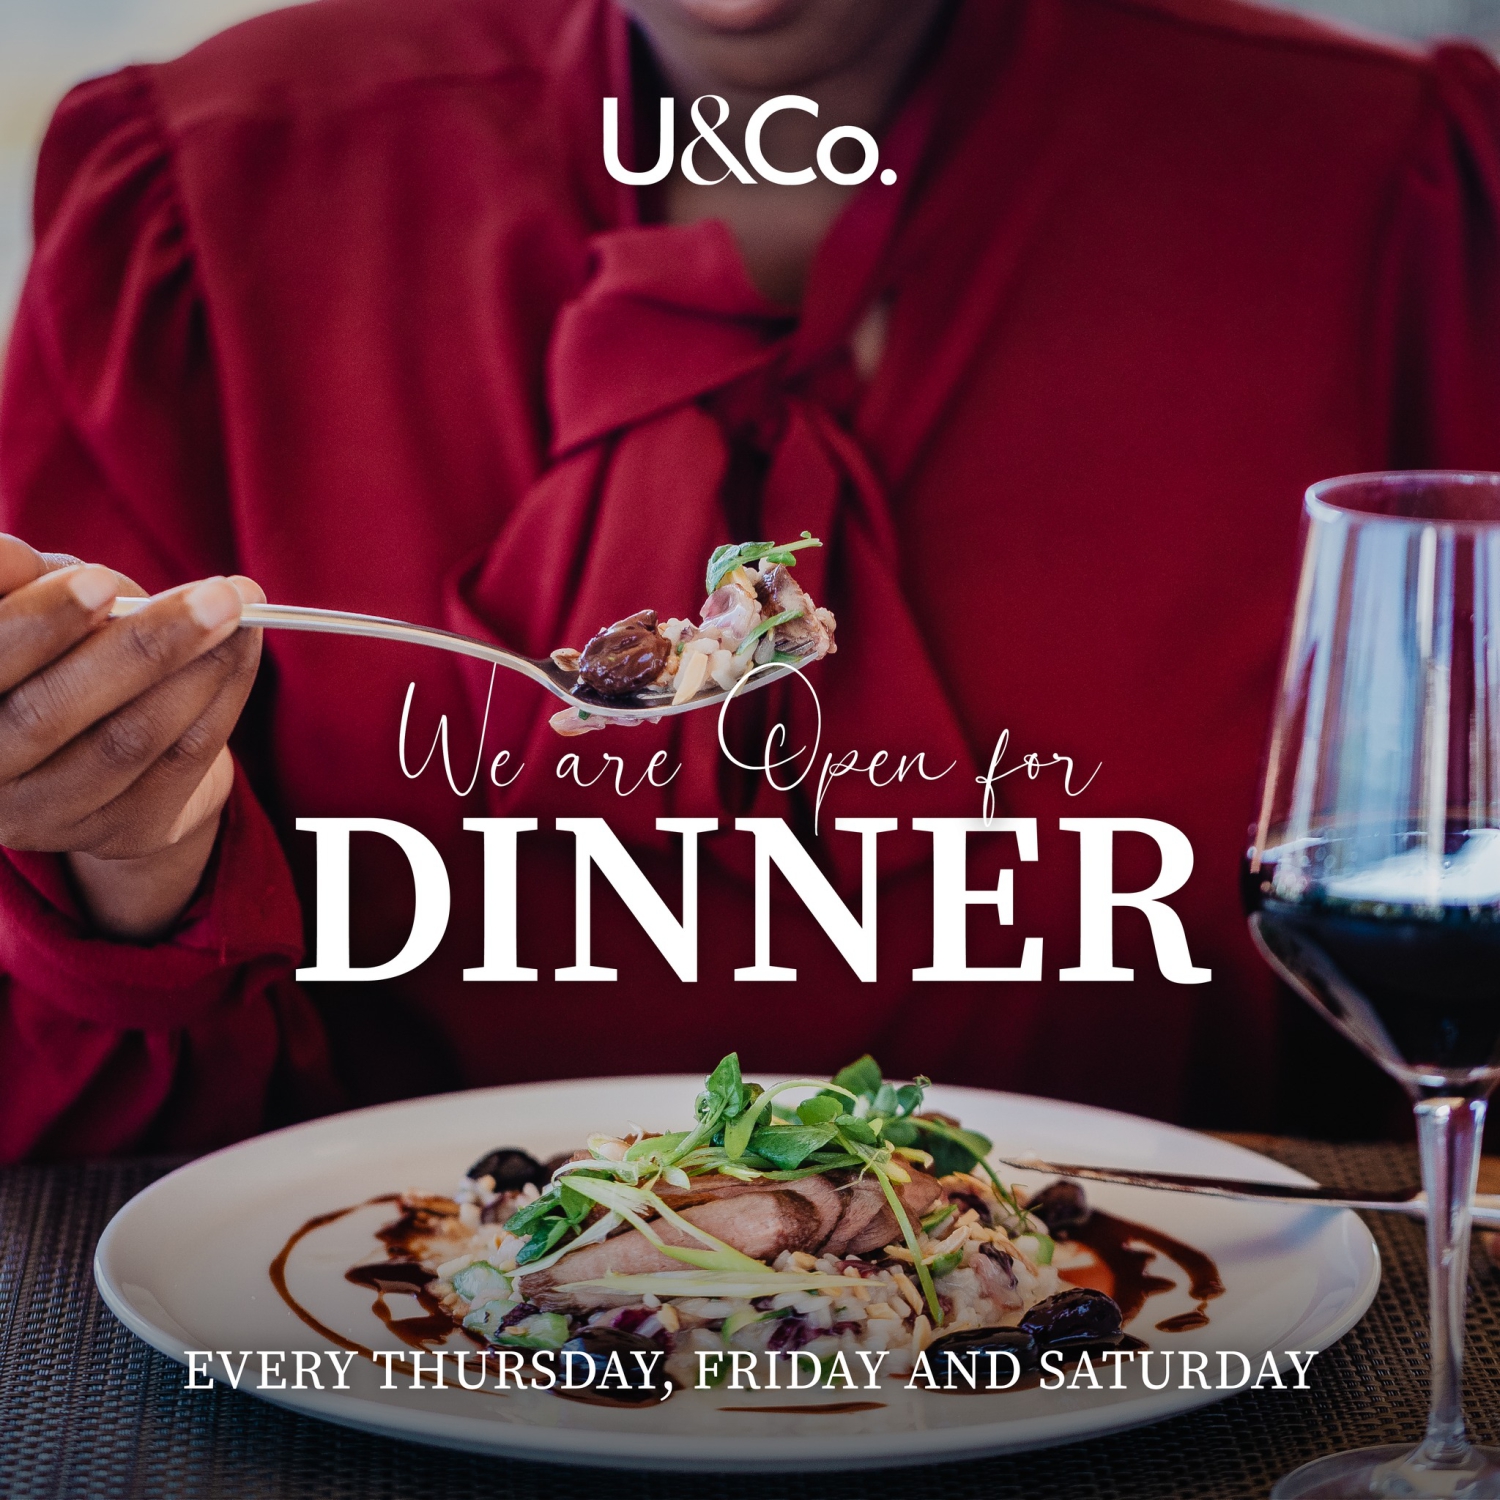 U&Co now open for Dinner